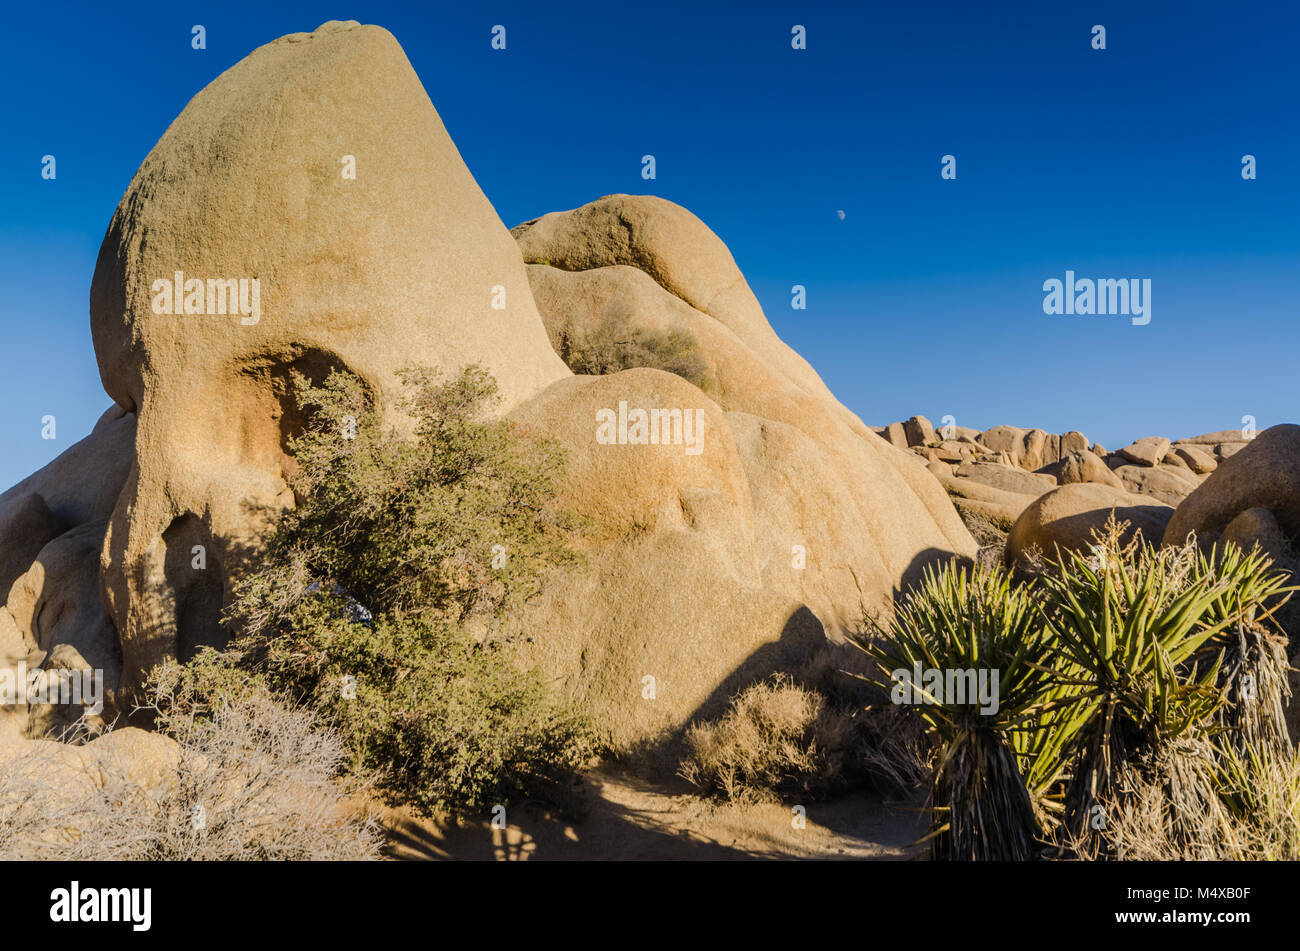 Der Schädel Rock geologische Formation ist ein Liebling der Besucher zu Joshua Tree National Park in Yucca Valley, Mojave Wüste, Kalifornien USA. Stockfoto